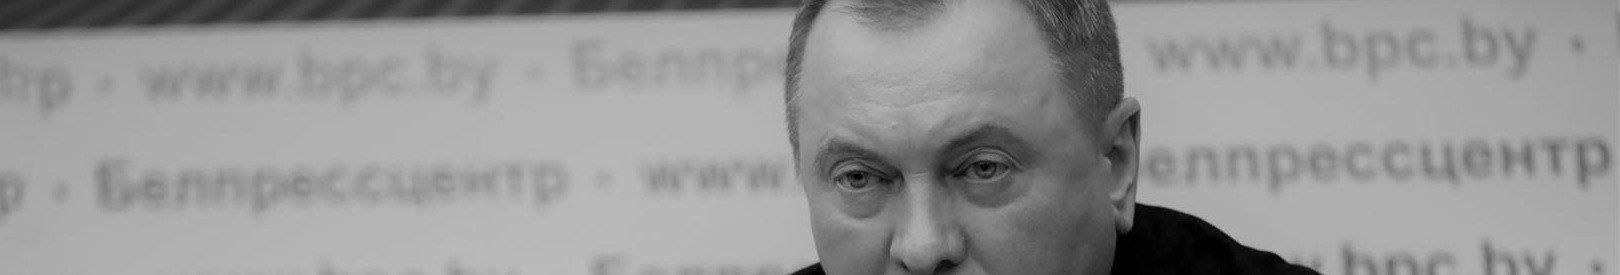 Vladimir Makey: Chronologie der Ereignisse im Zusammenhang mit seinem Tod